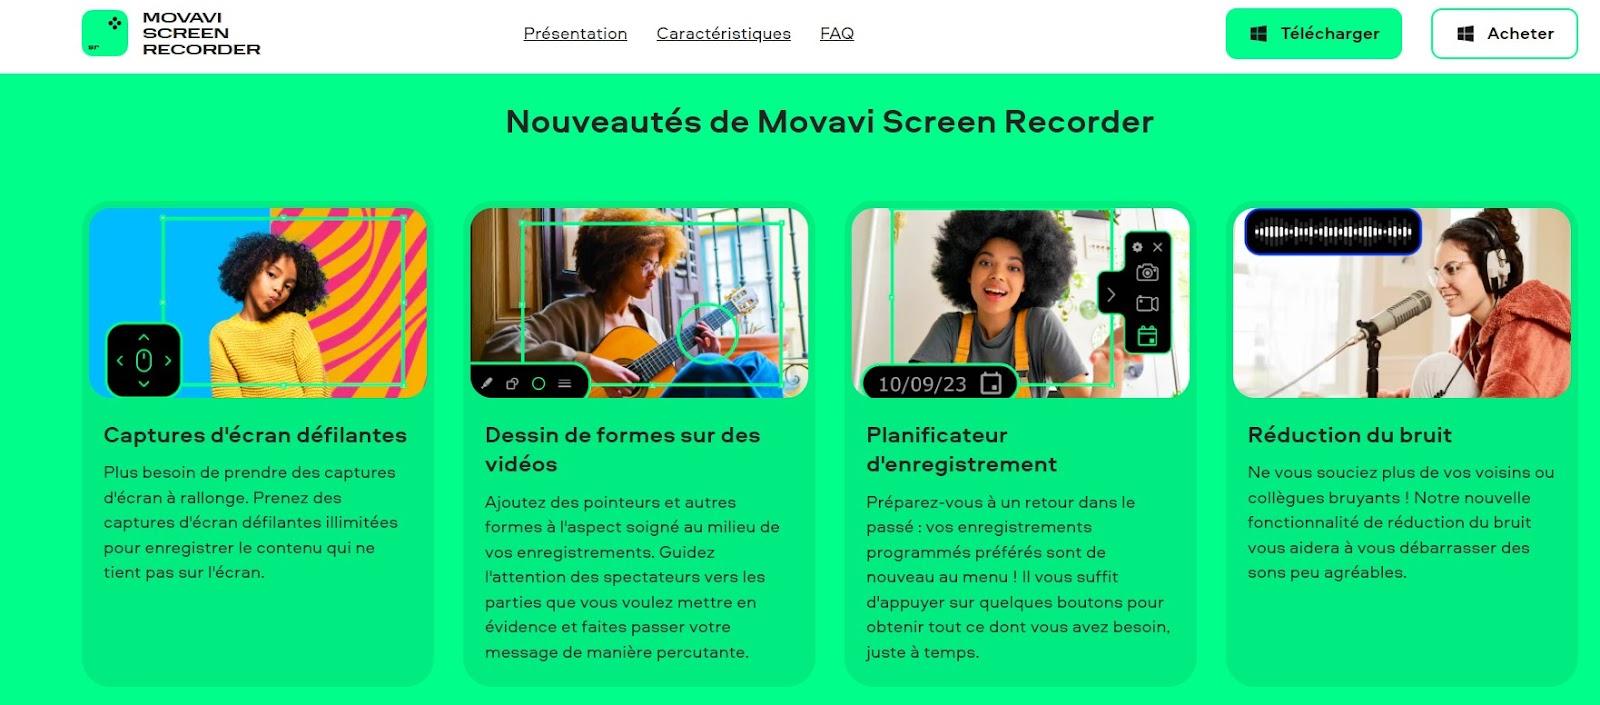 Nouveautés Movavi Screen Recorder